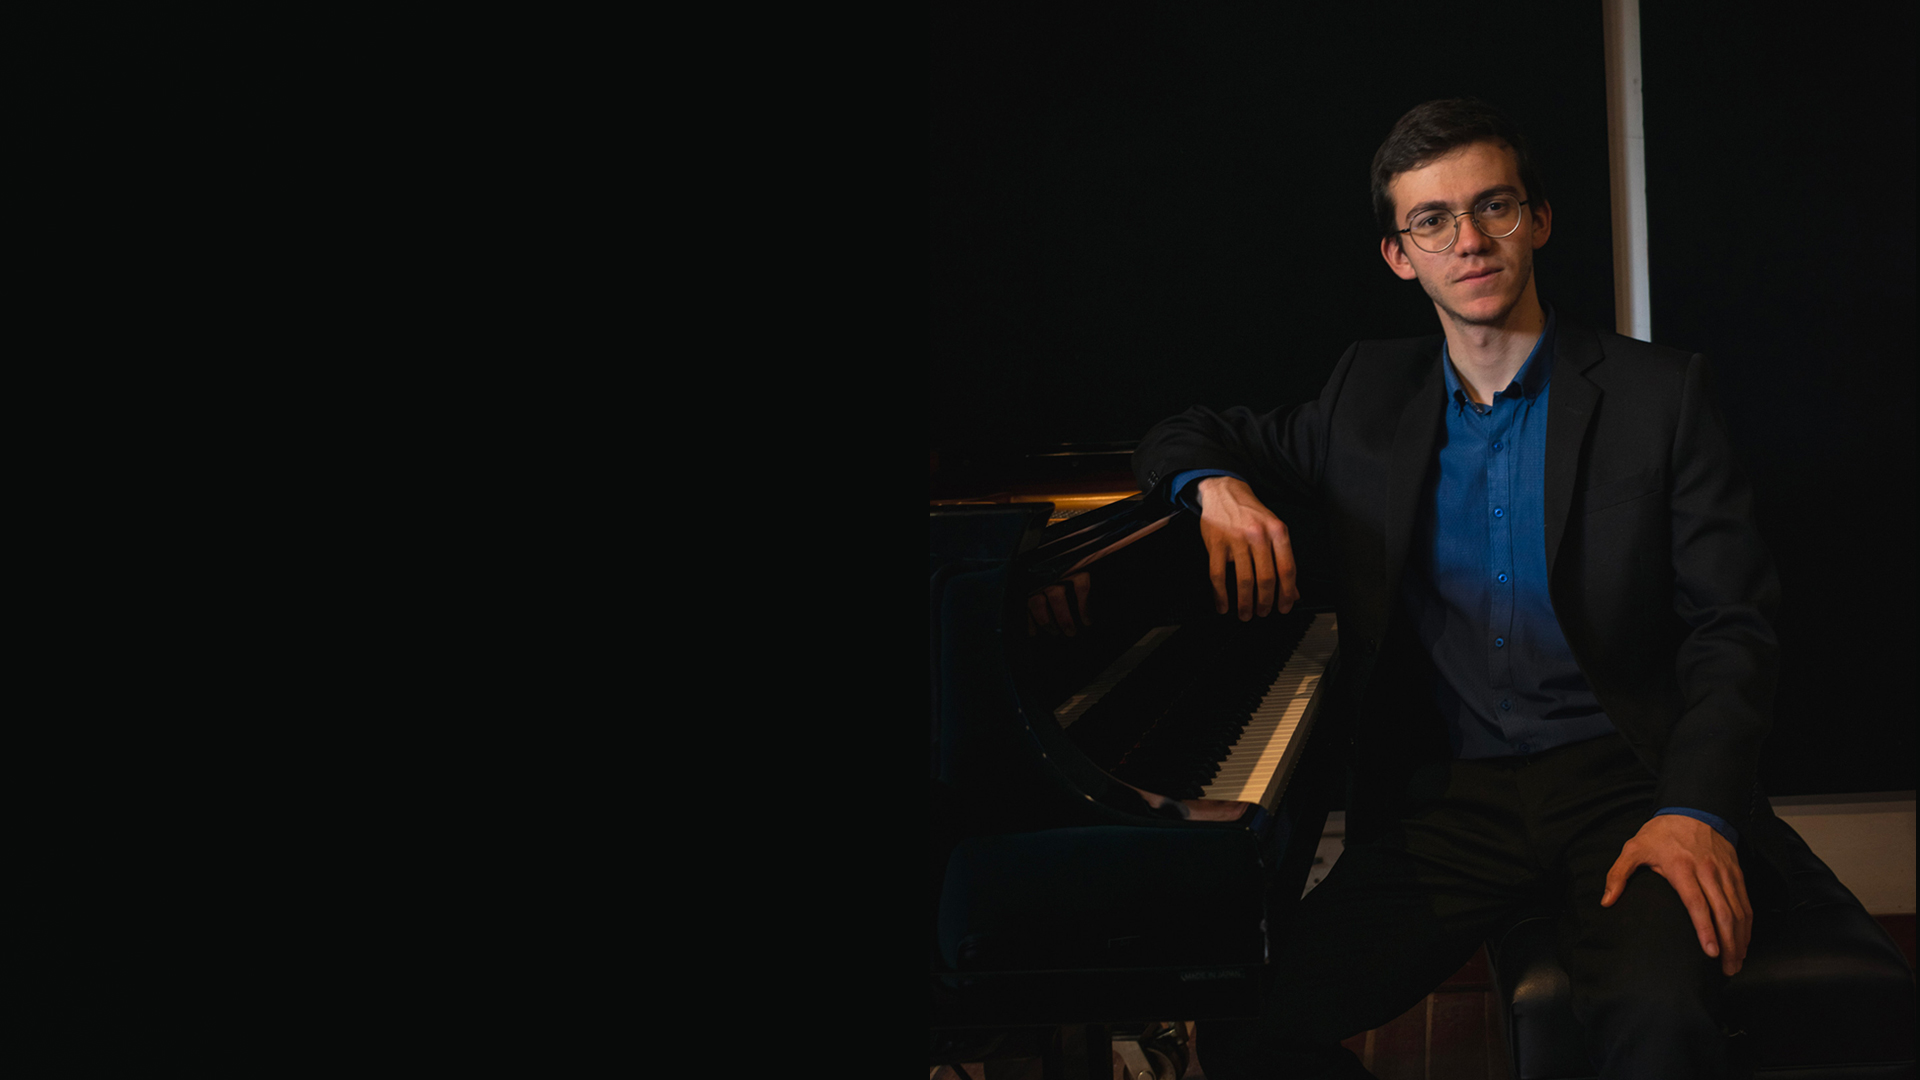 David Torres ganó el segundo lugar en el Concurso Internacional de Piano José Jacinto Cuevas